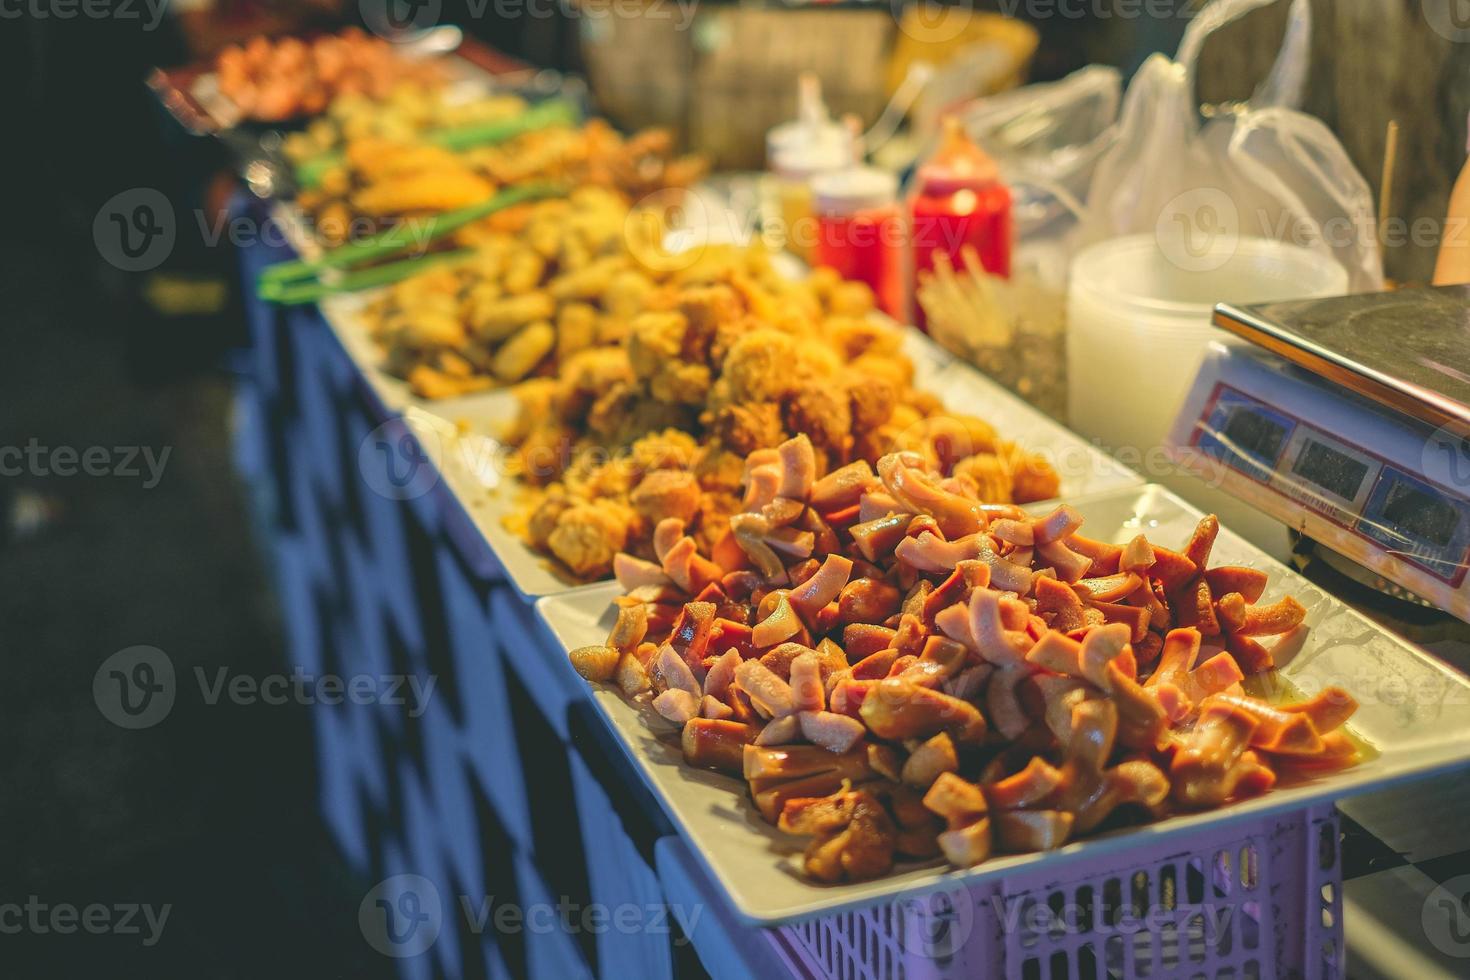 crevettes grillées et nourriture de crabe de la rivière mae khong, petite crevette grillée à chiang khan loei nord-est de la thaïlande, rue piétonne photo